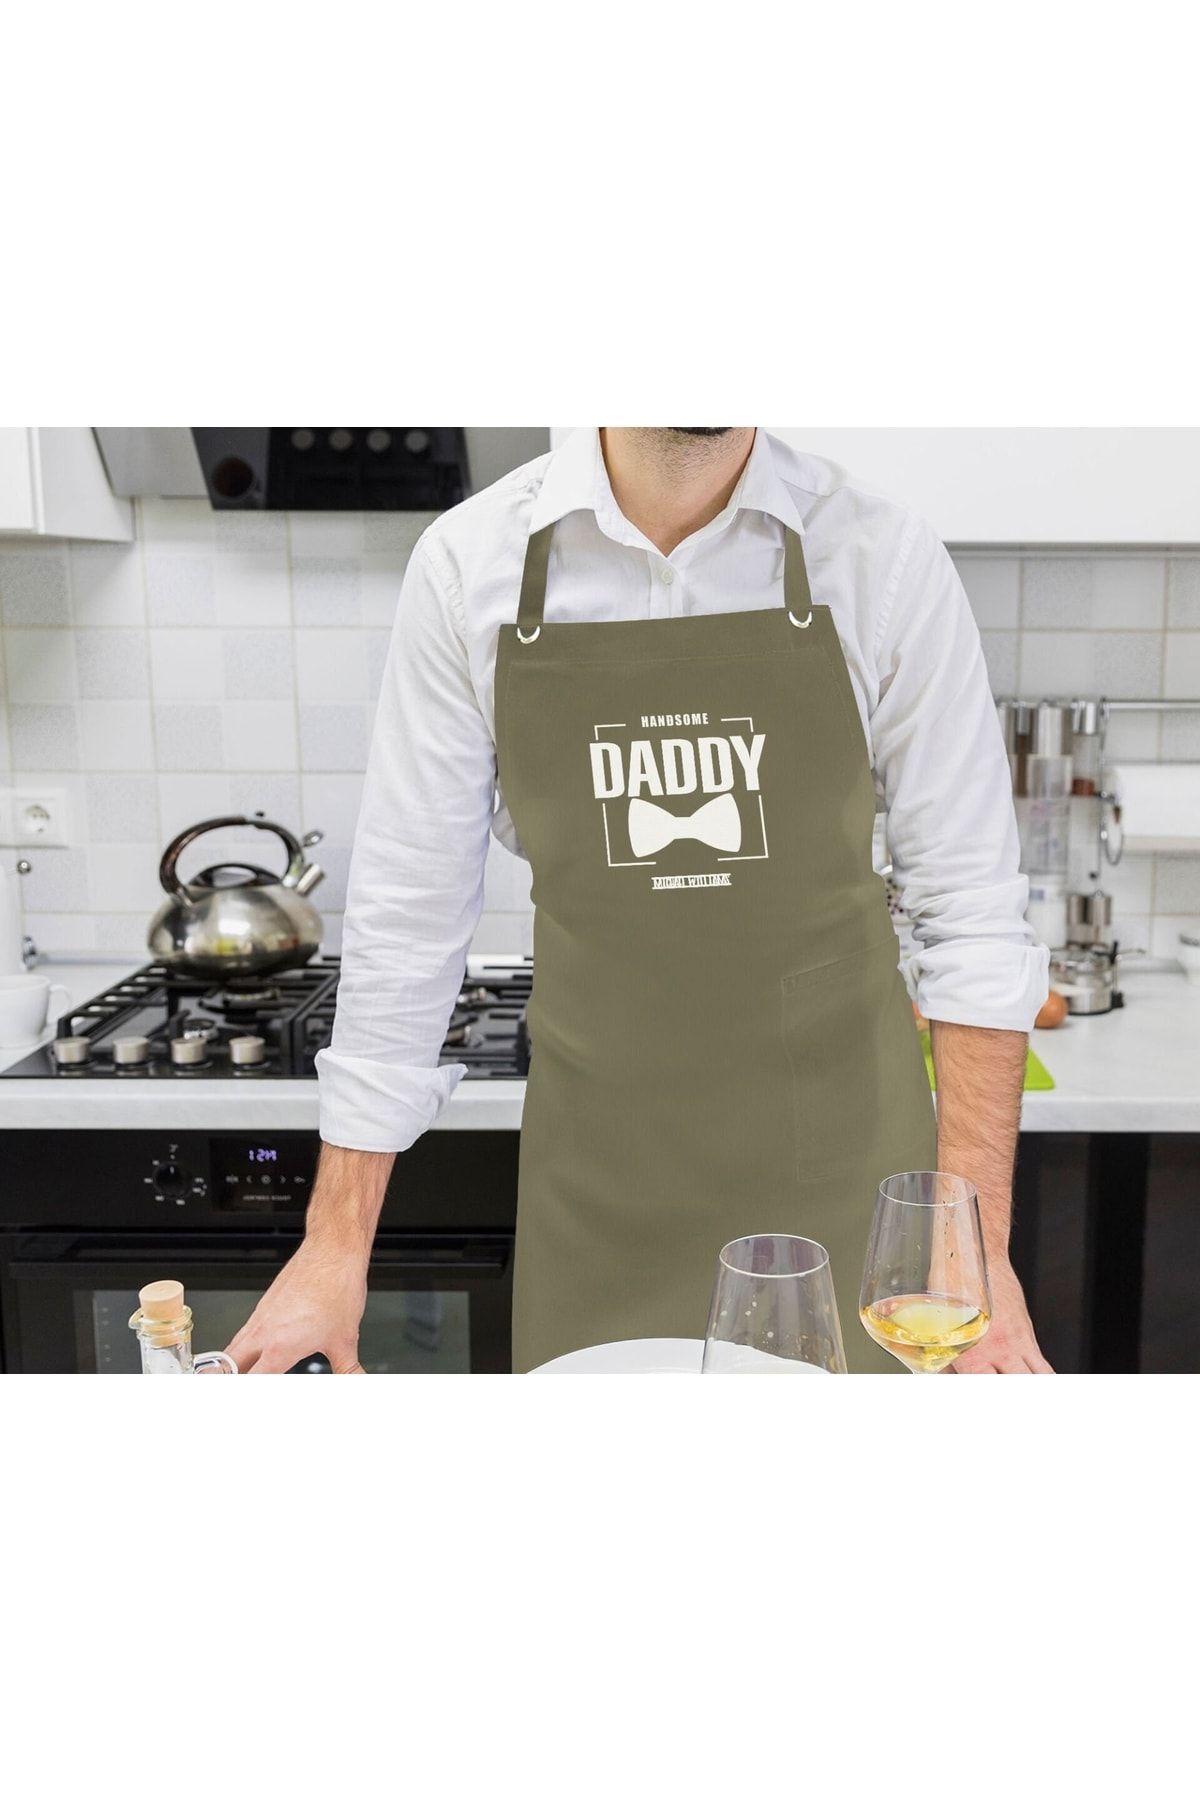 Bk Gift Kişiye Özel Isimli Babalar Günü Tasarımlı Profesyonel Haki Mutfak Önlüğü-2, Aşçı Önlüğü, Şef